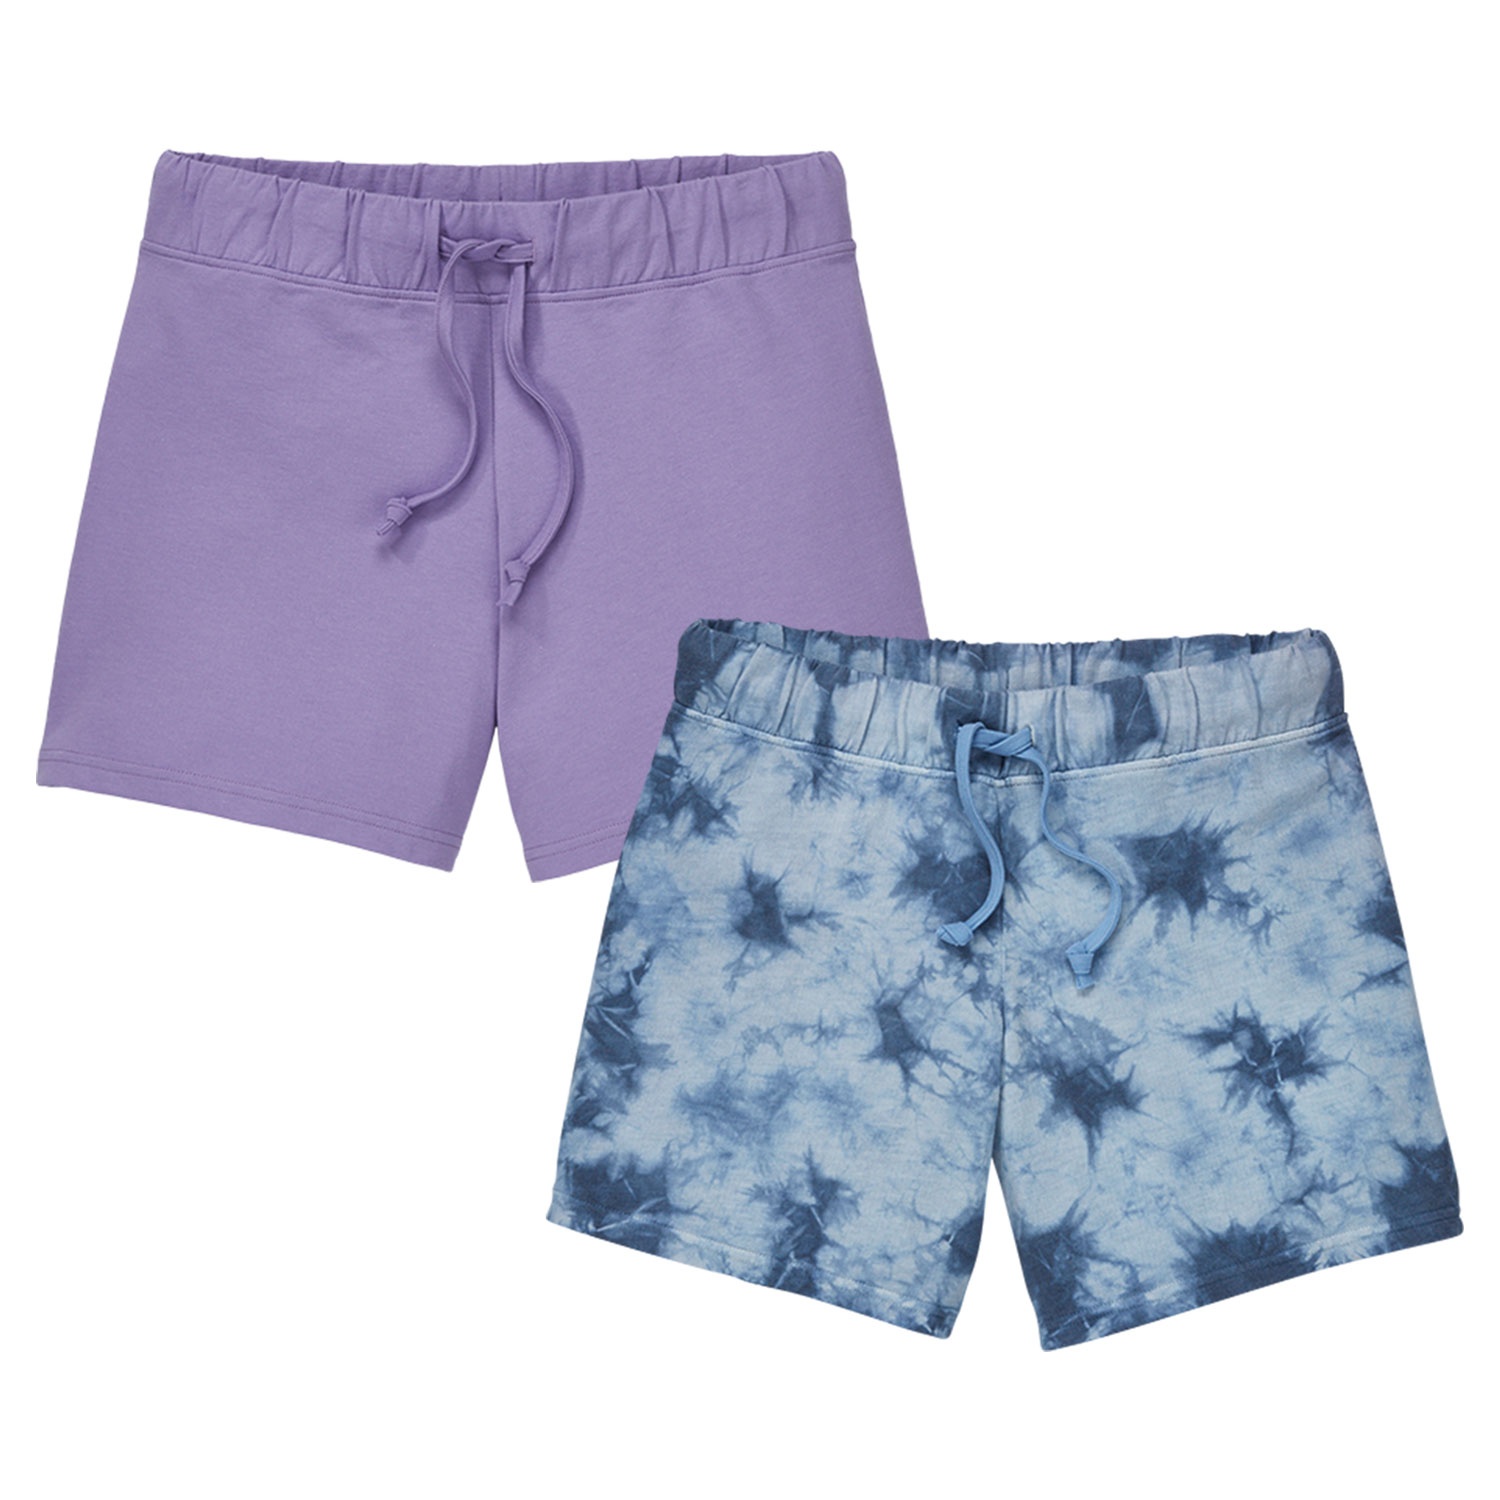 BLUE MOTION Damen Beach-Shorts, 2er-Set